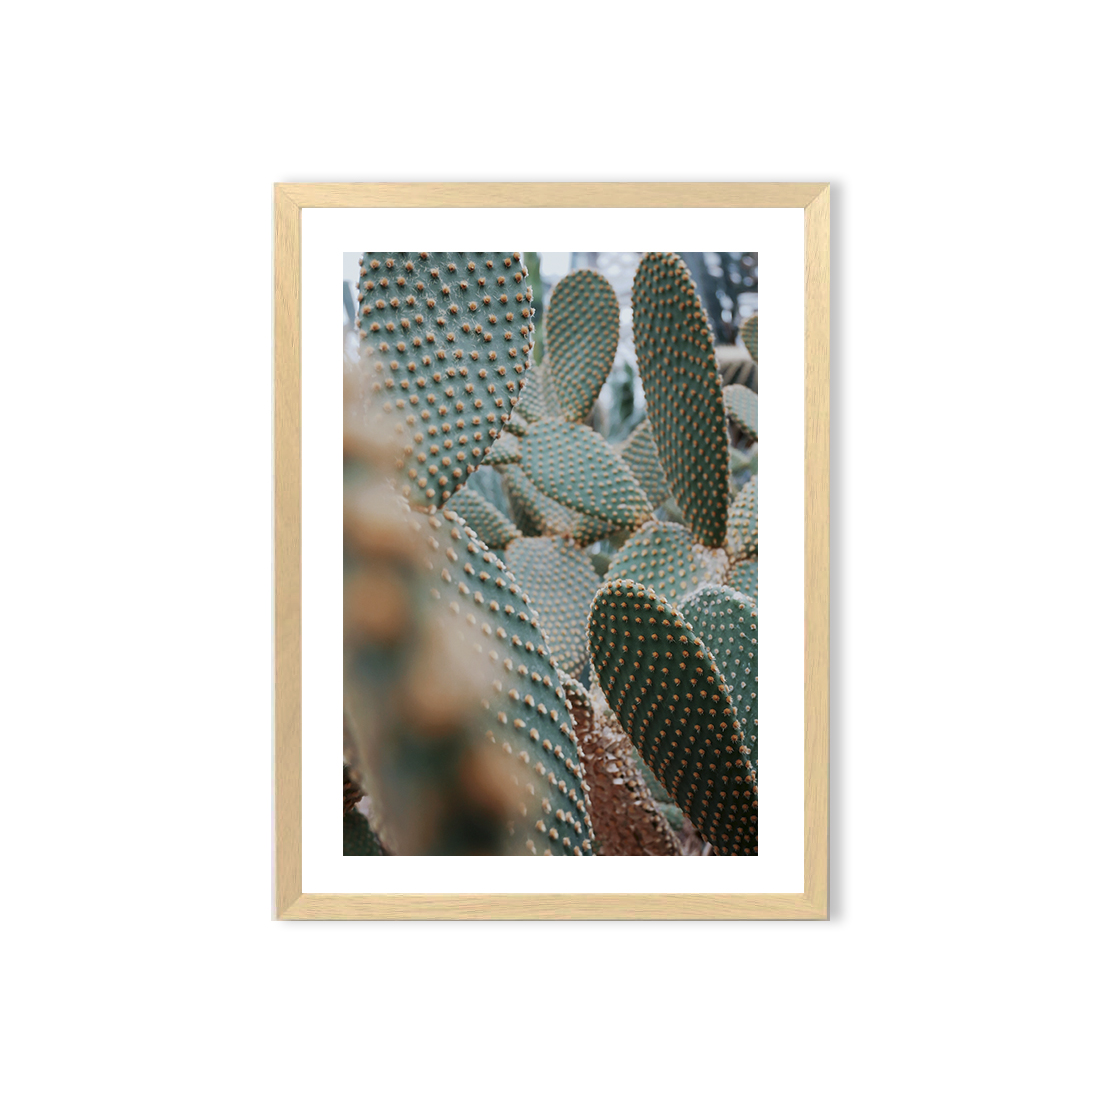 Cuadro / Cactus  1